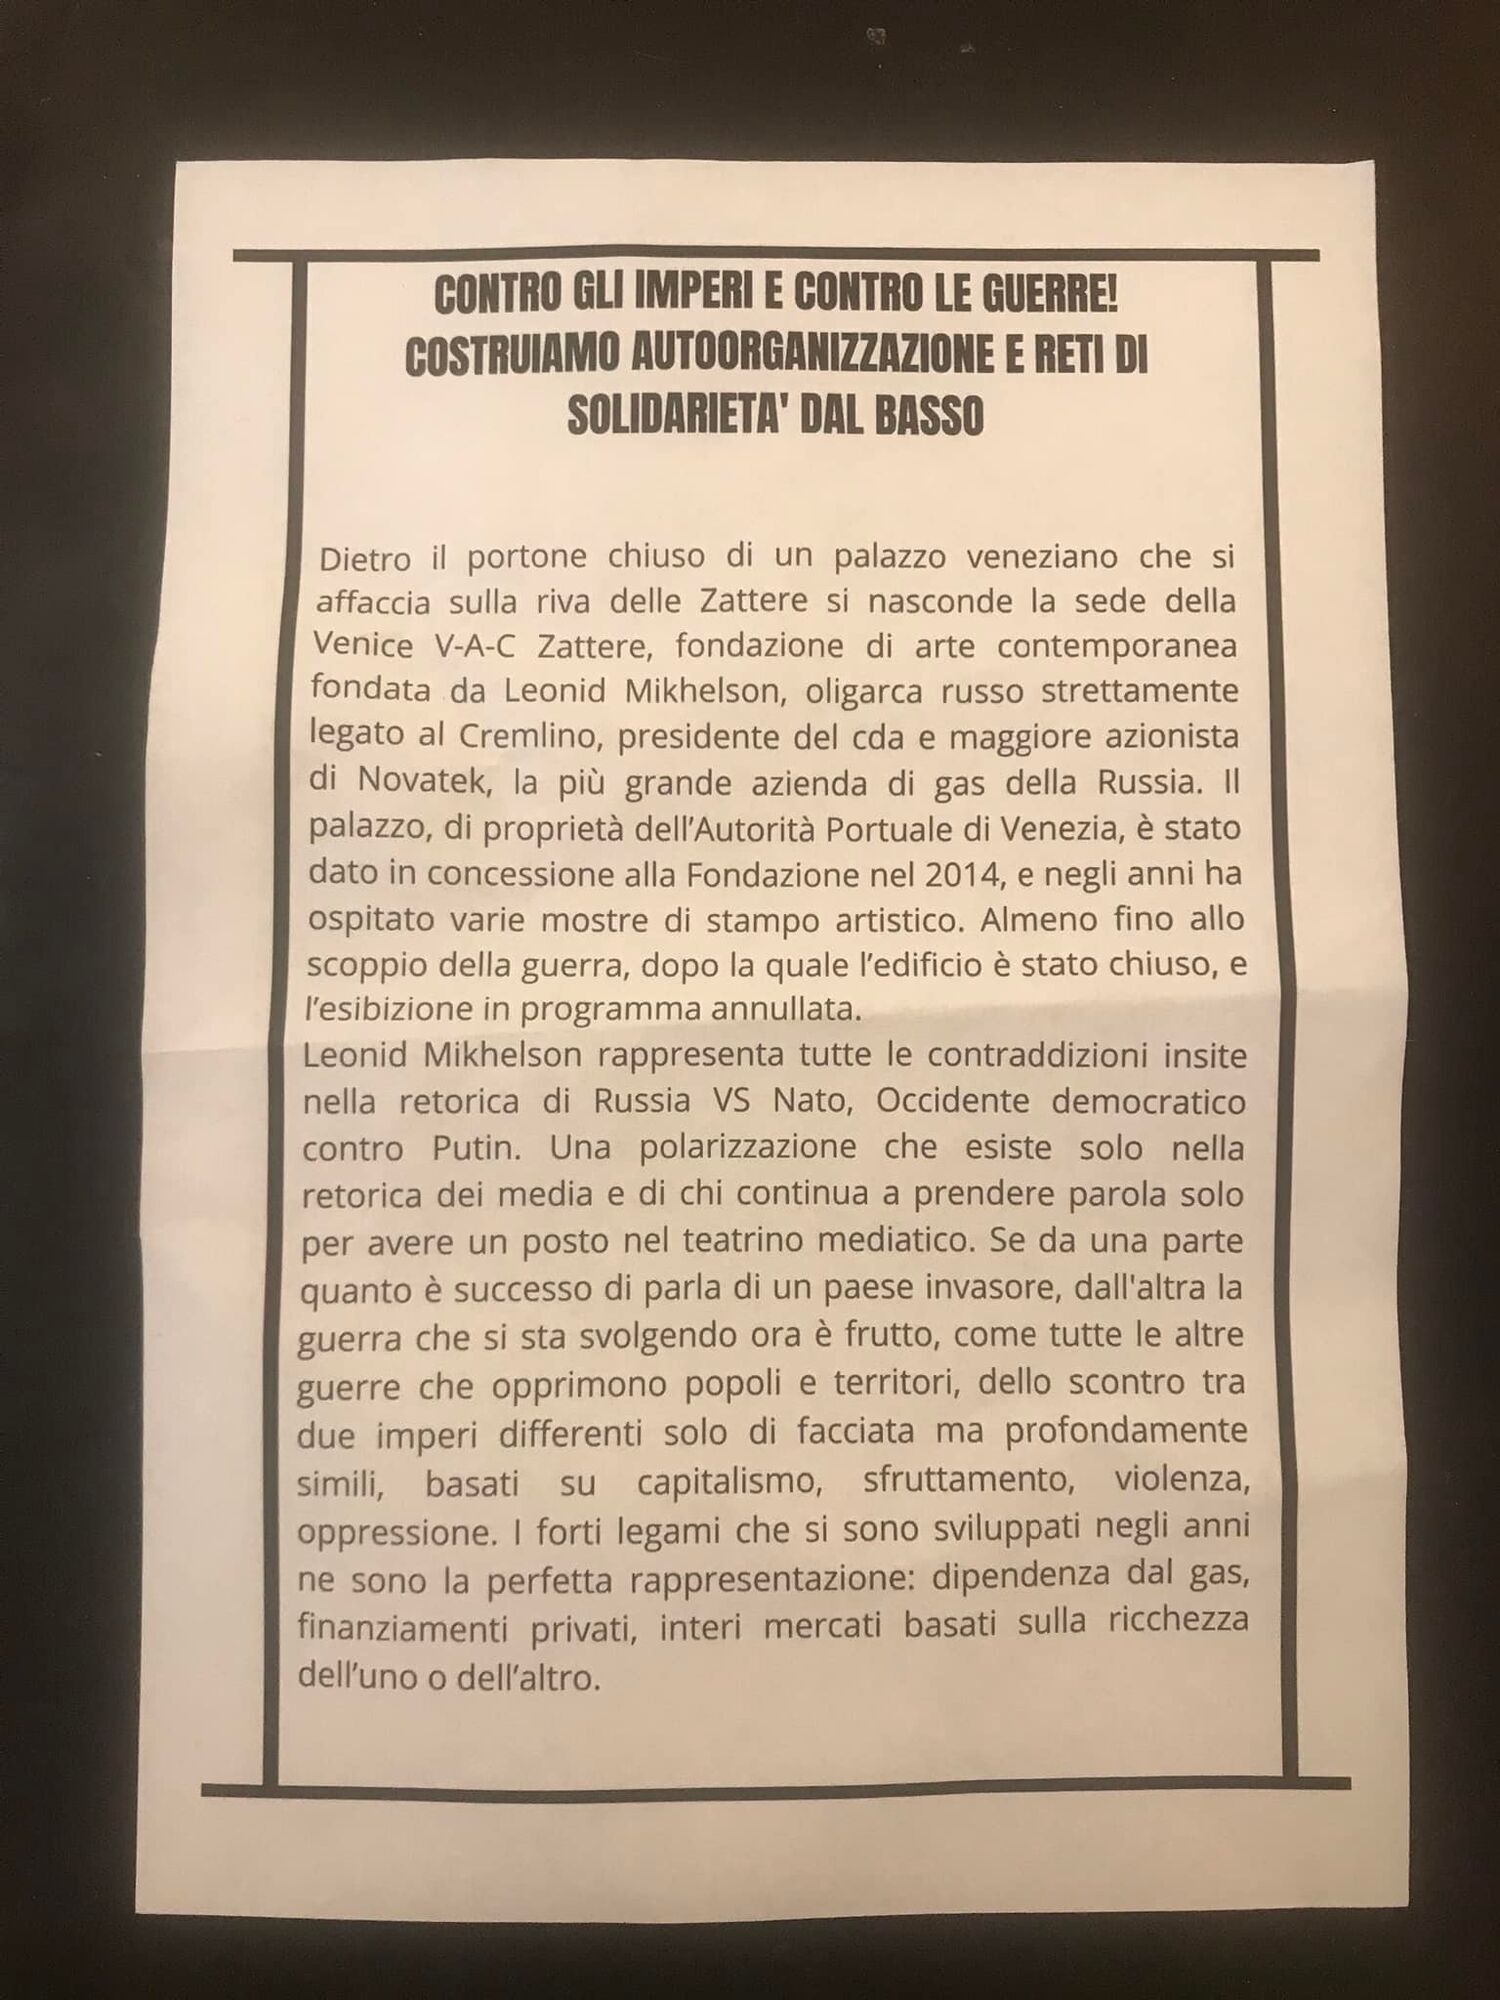 Несколько недель назад распространили в Венеции листовки о близости Михельсона и Путина